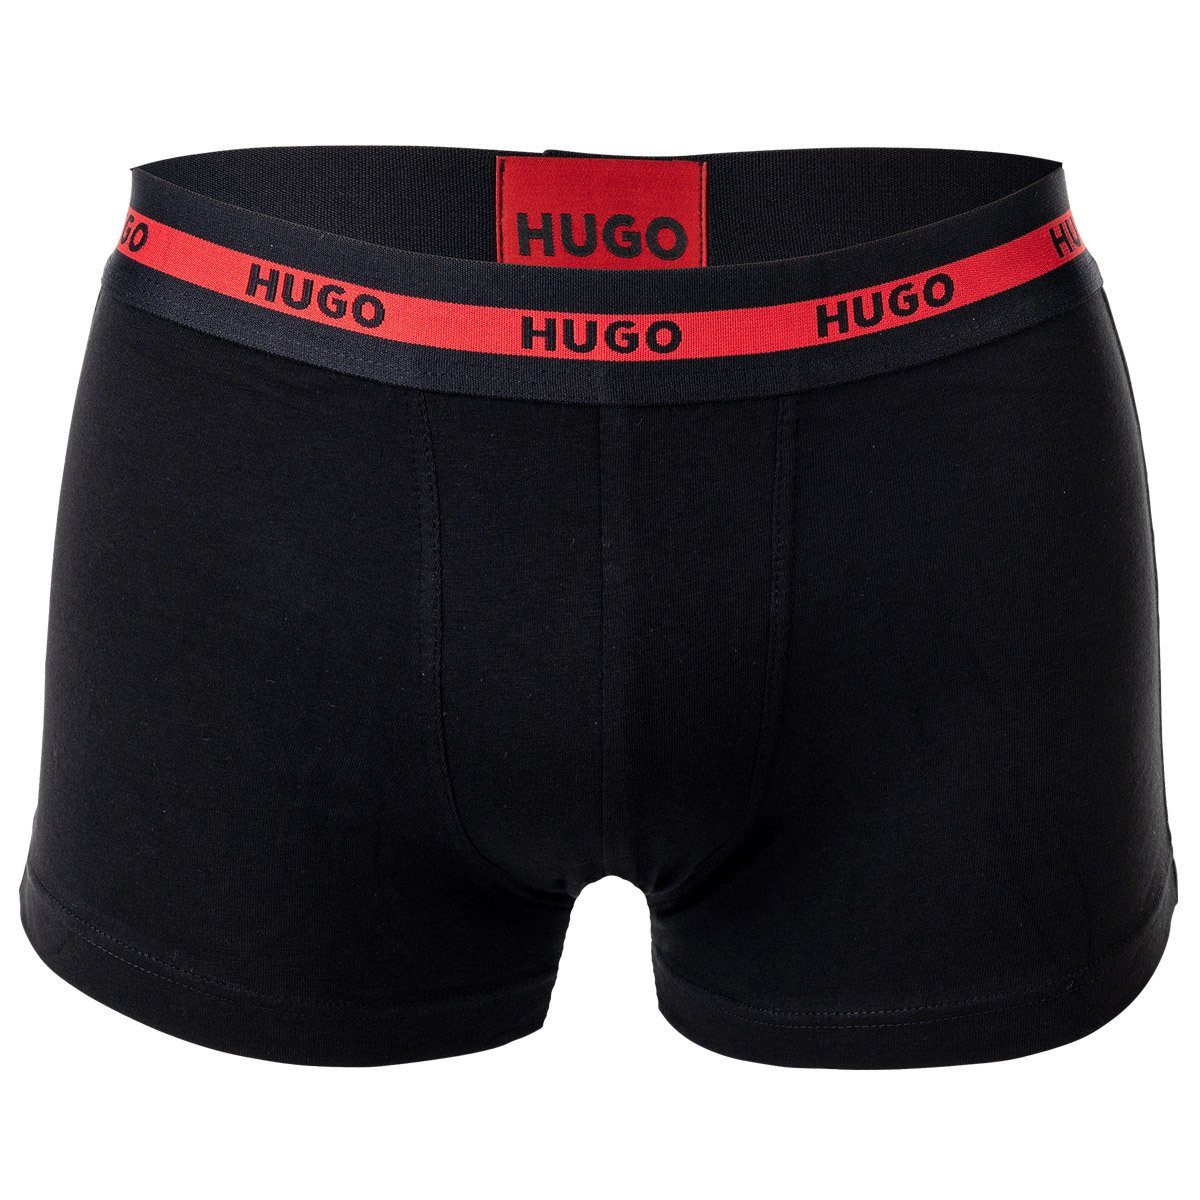 Boxer HUGO Shorts, Boxer Schwarz Herren Twin Pack Pack Trunks - 2er